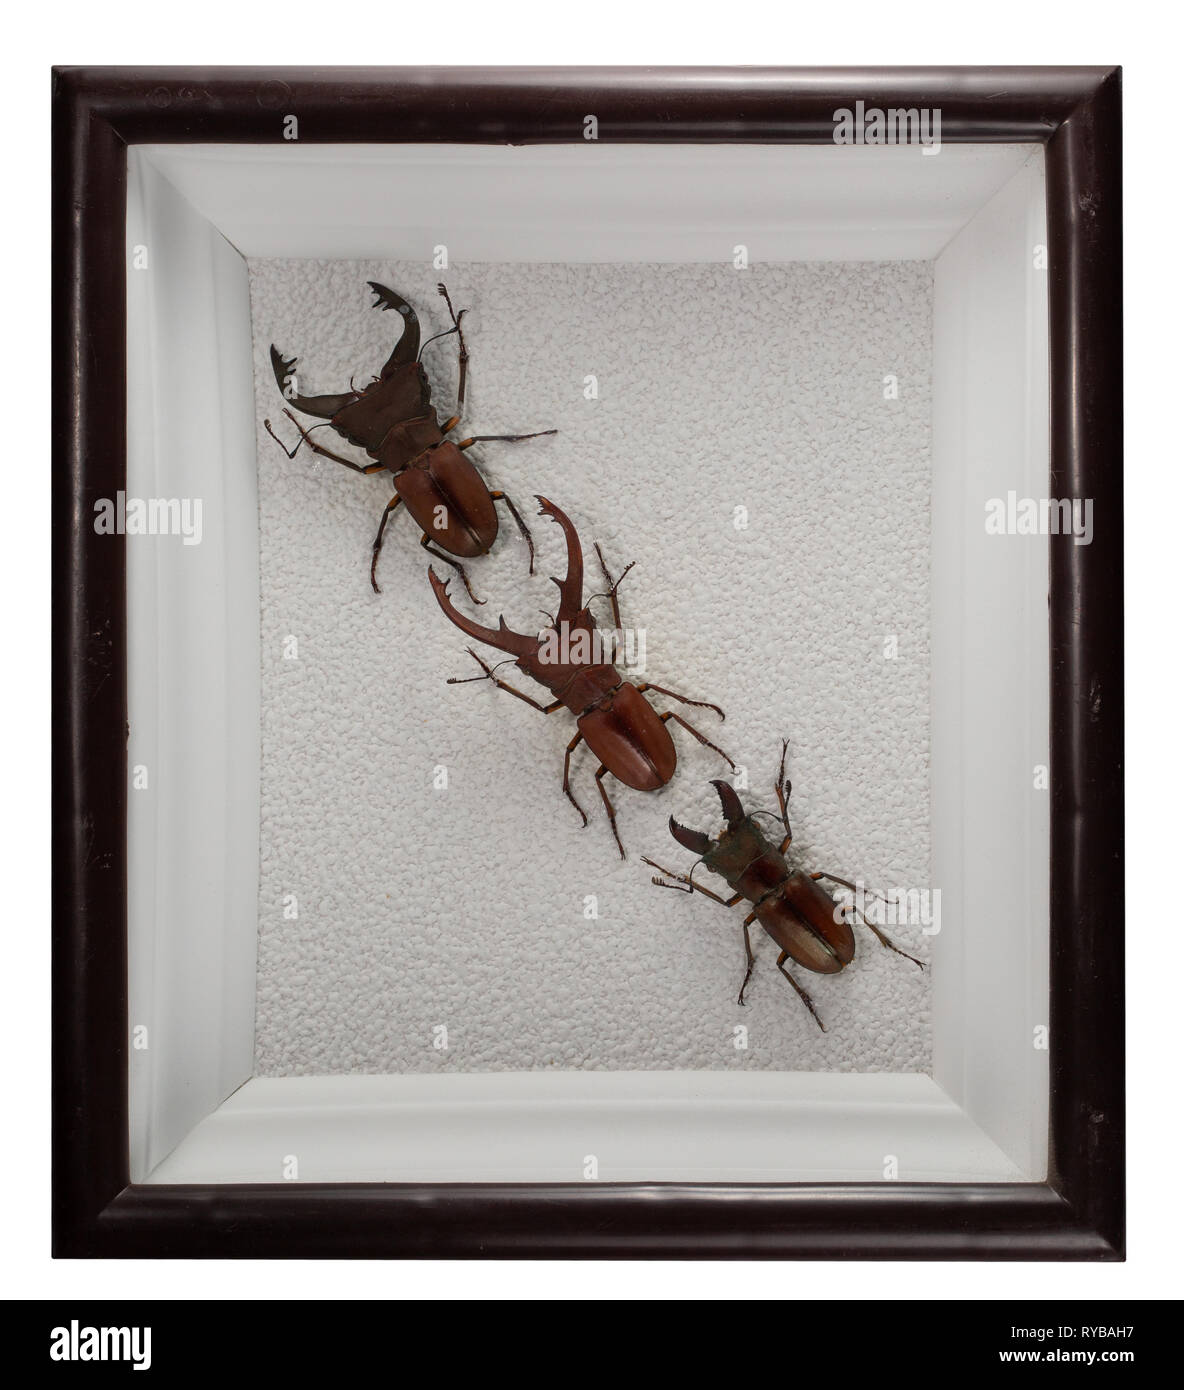 Käfer cyclommatus Pulchellus, eximius, lunifer in Rahmen auf weißem Hintergrund. Stockfoto